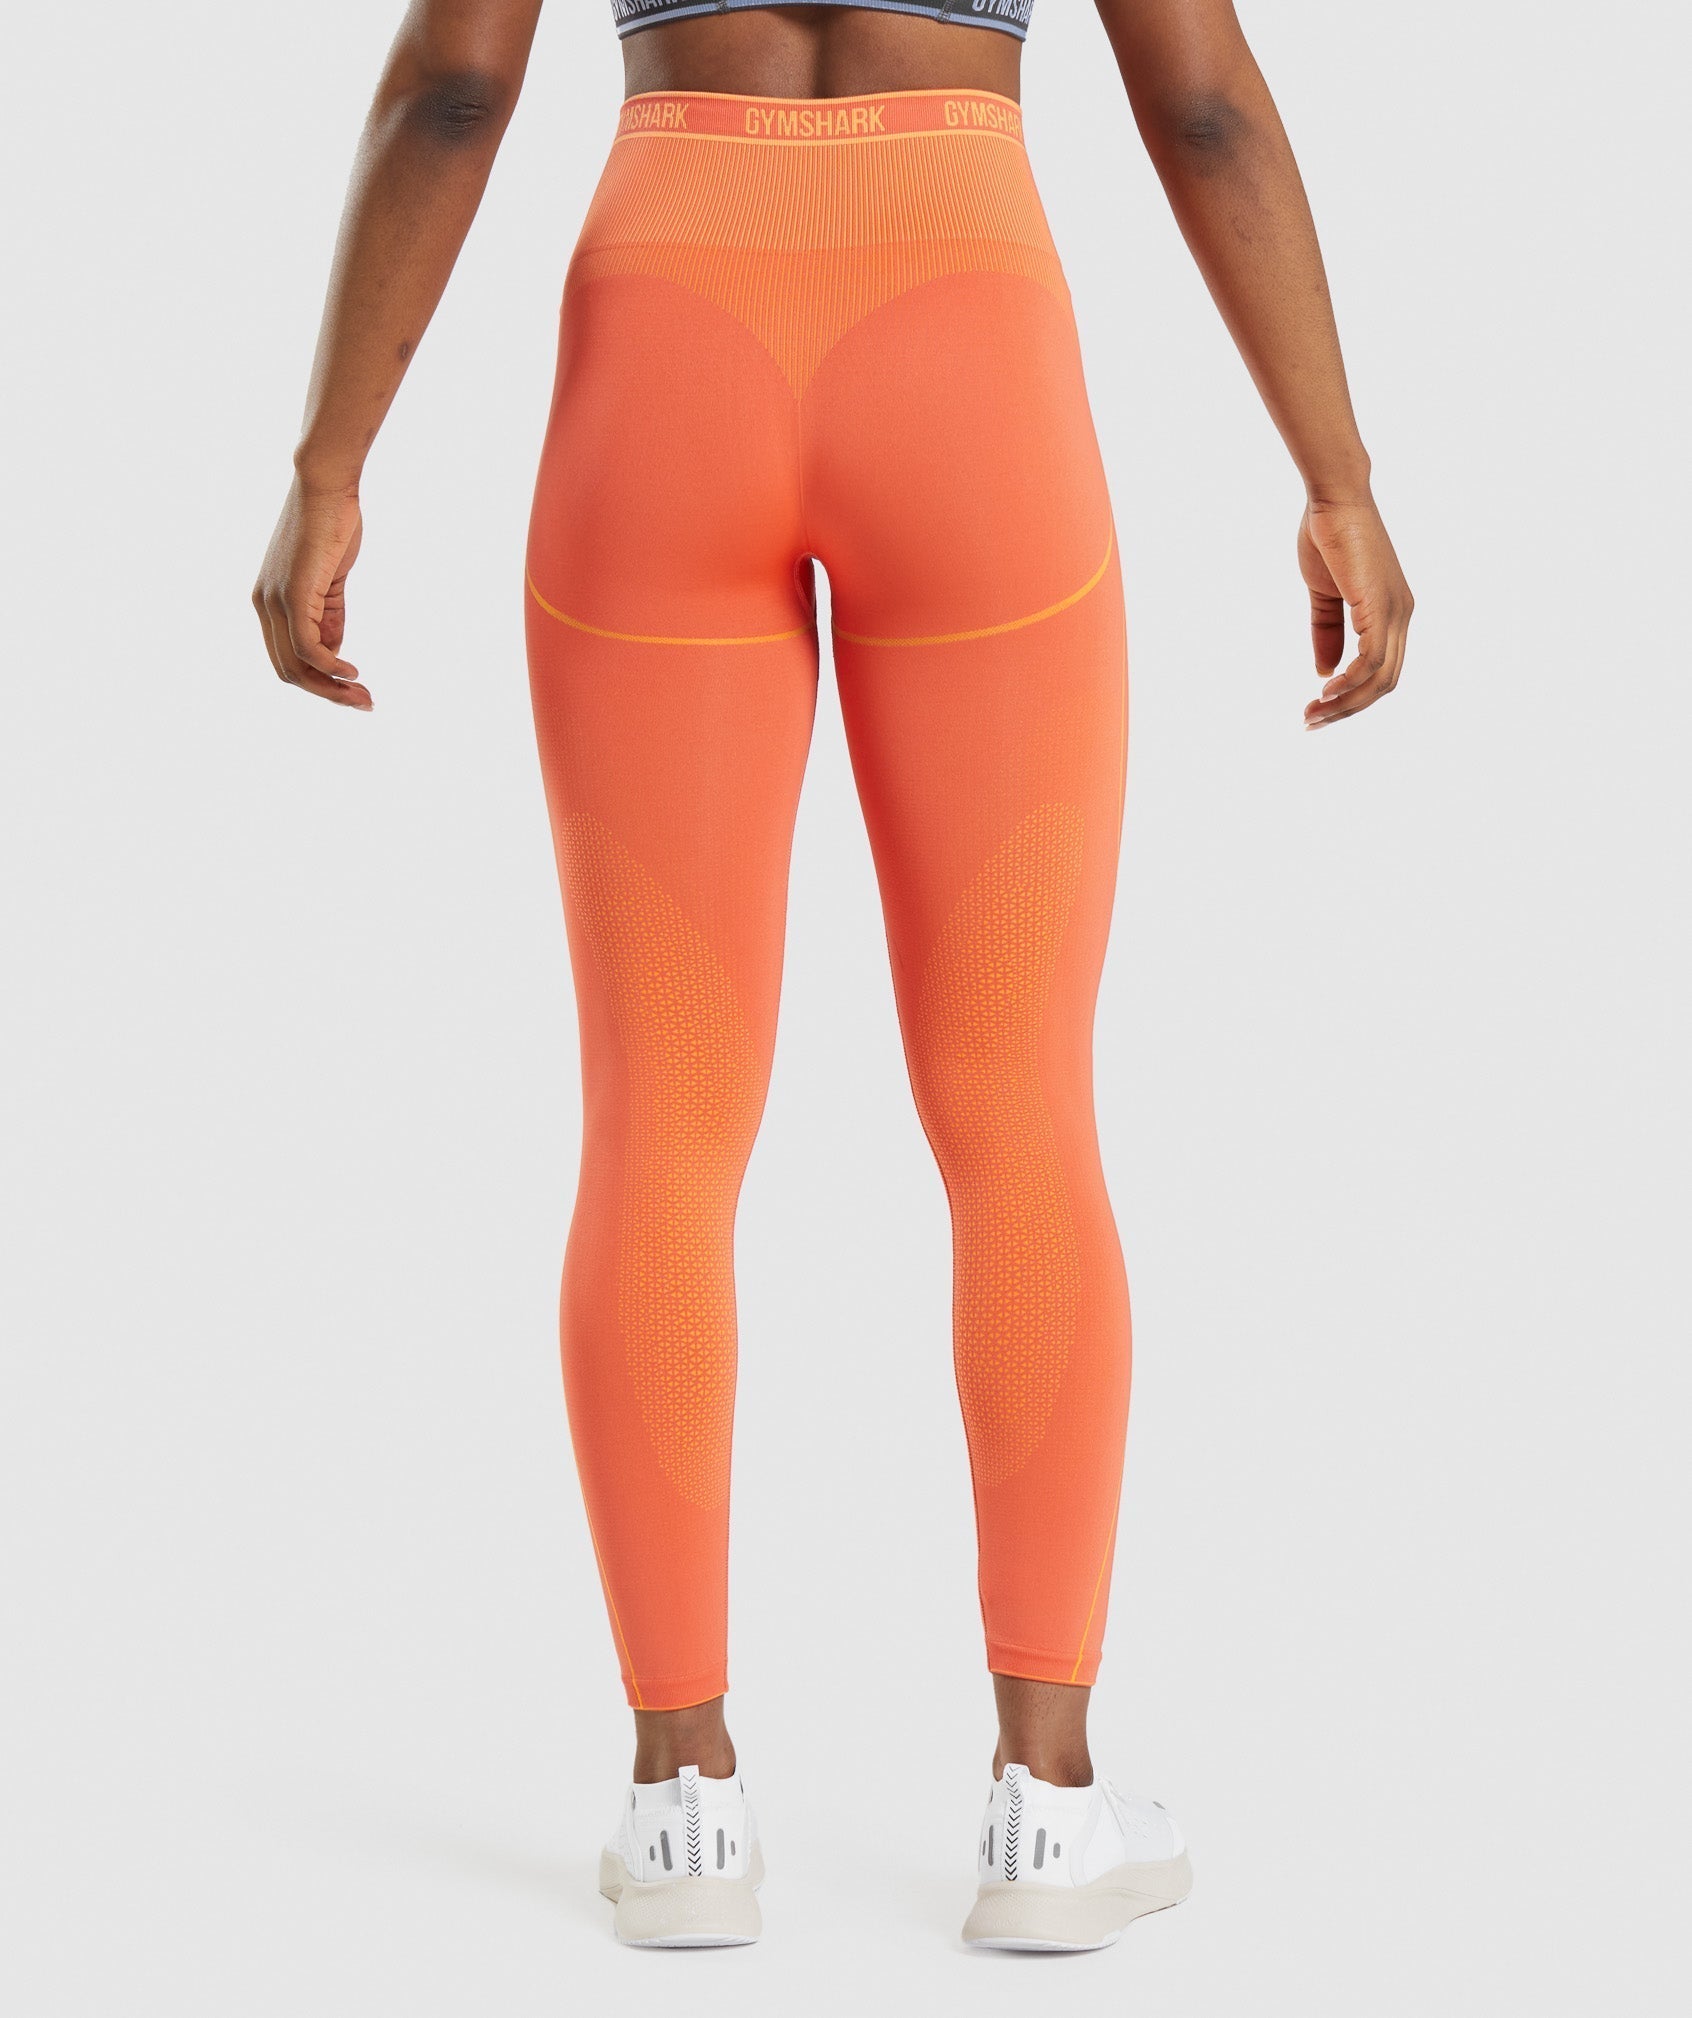 Apex Seamless High Rise Leggings in Papaya Orange/Apricot Orange - view 2